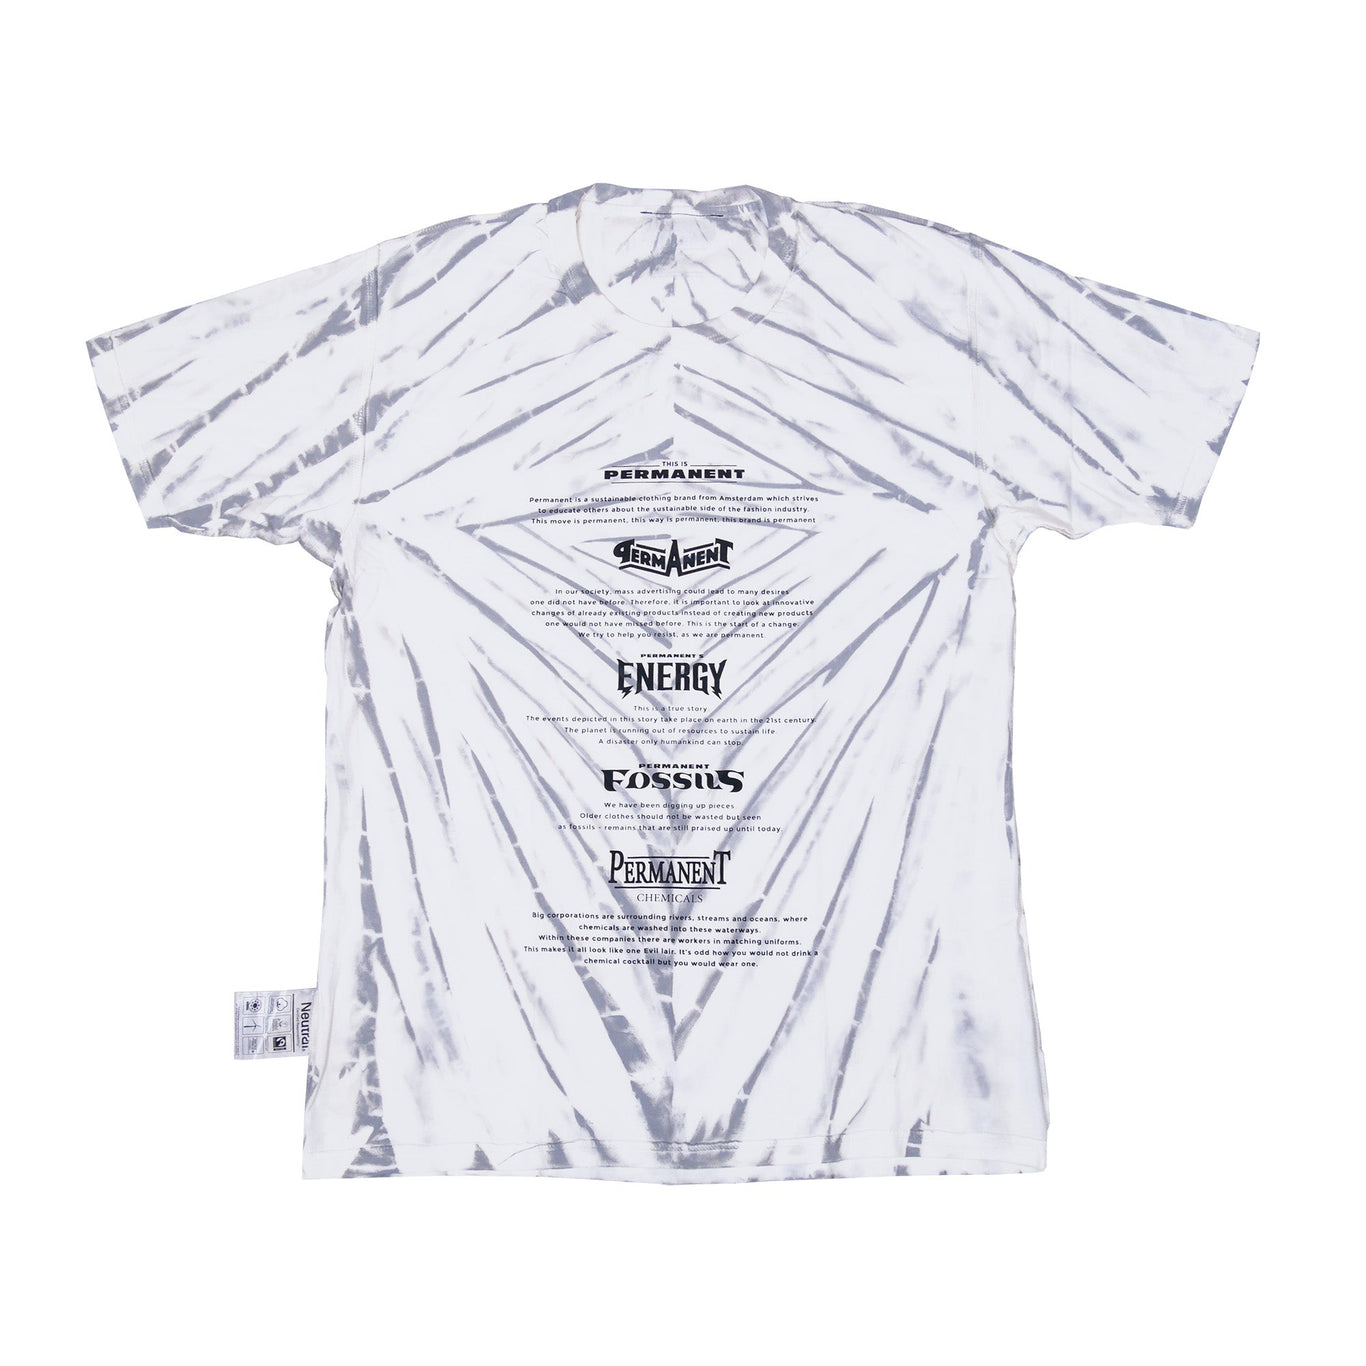 Permanent Dry Tie Concept t-shirt